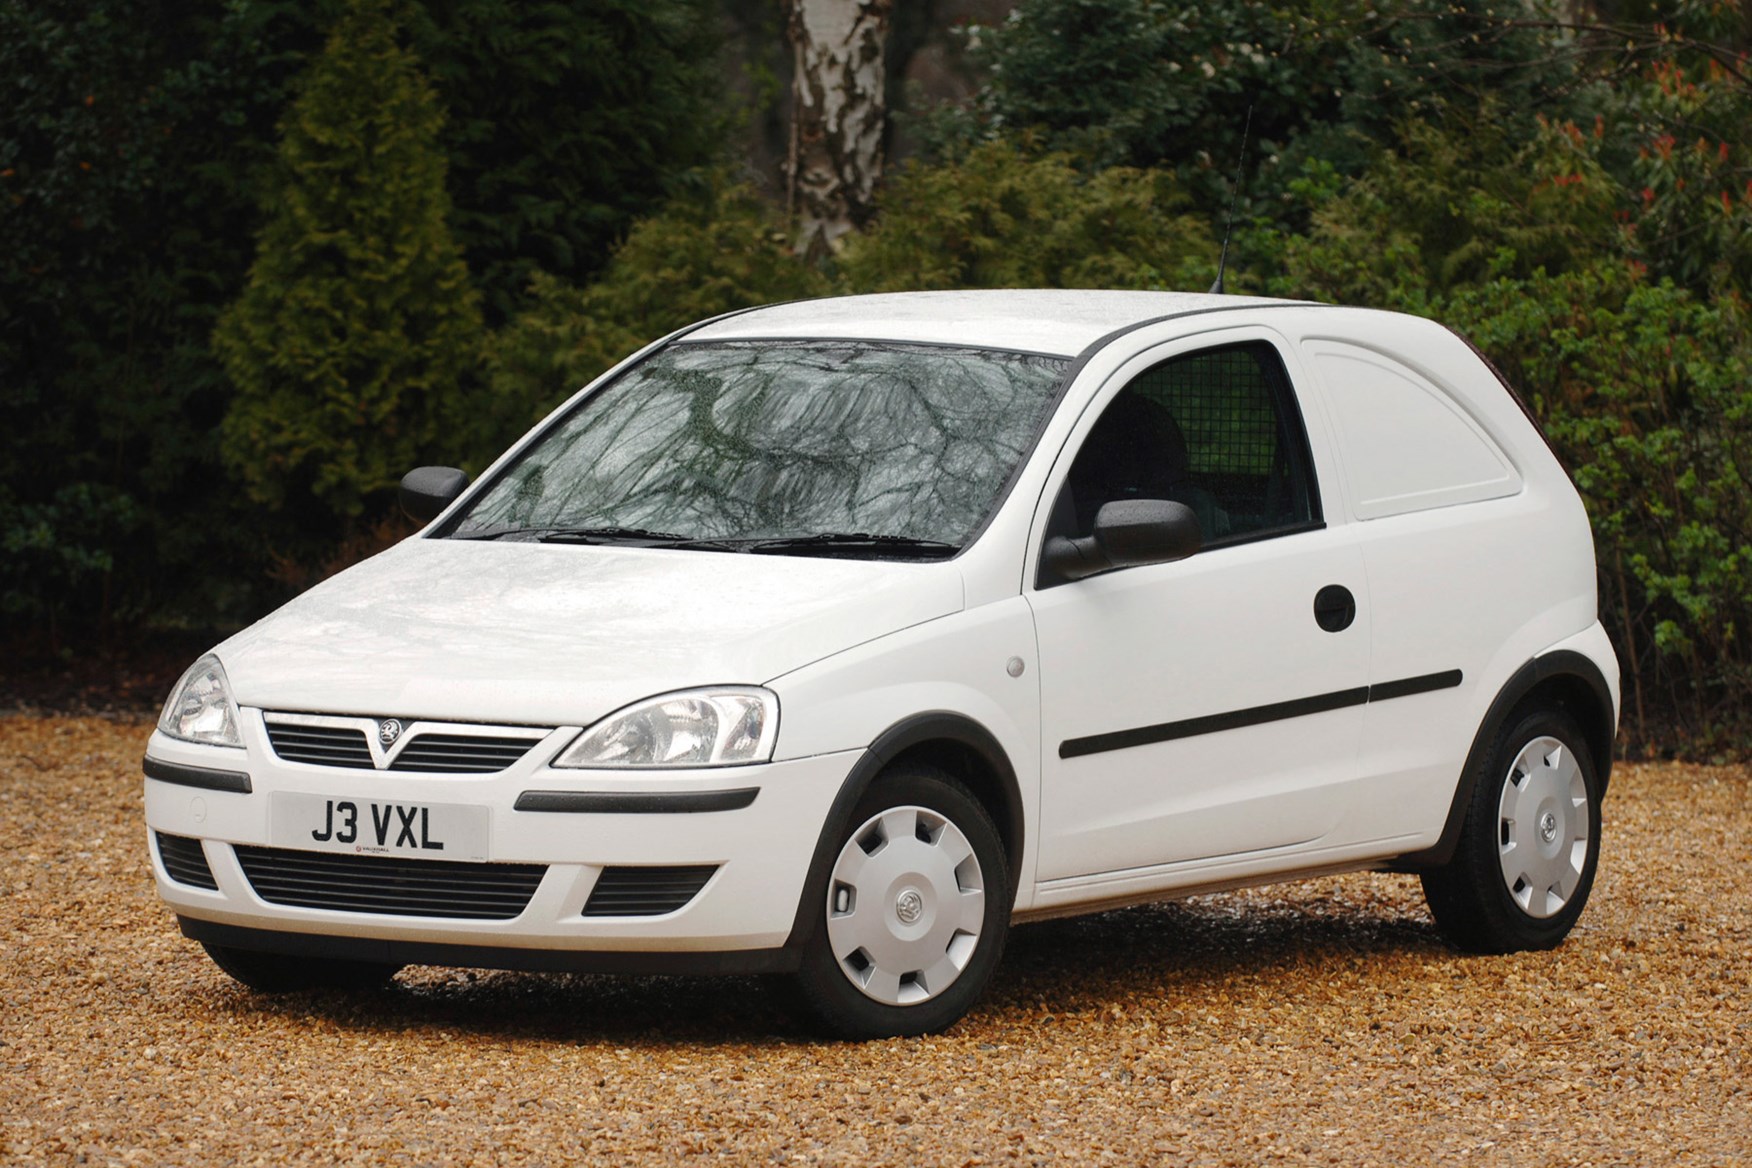 Vauxhall Corsavan van review (2001-2006 